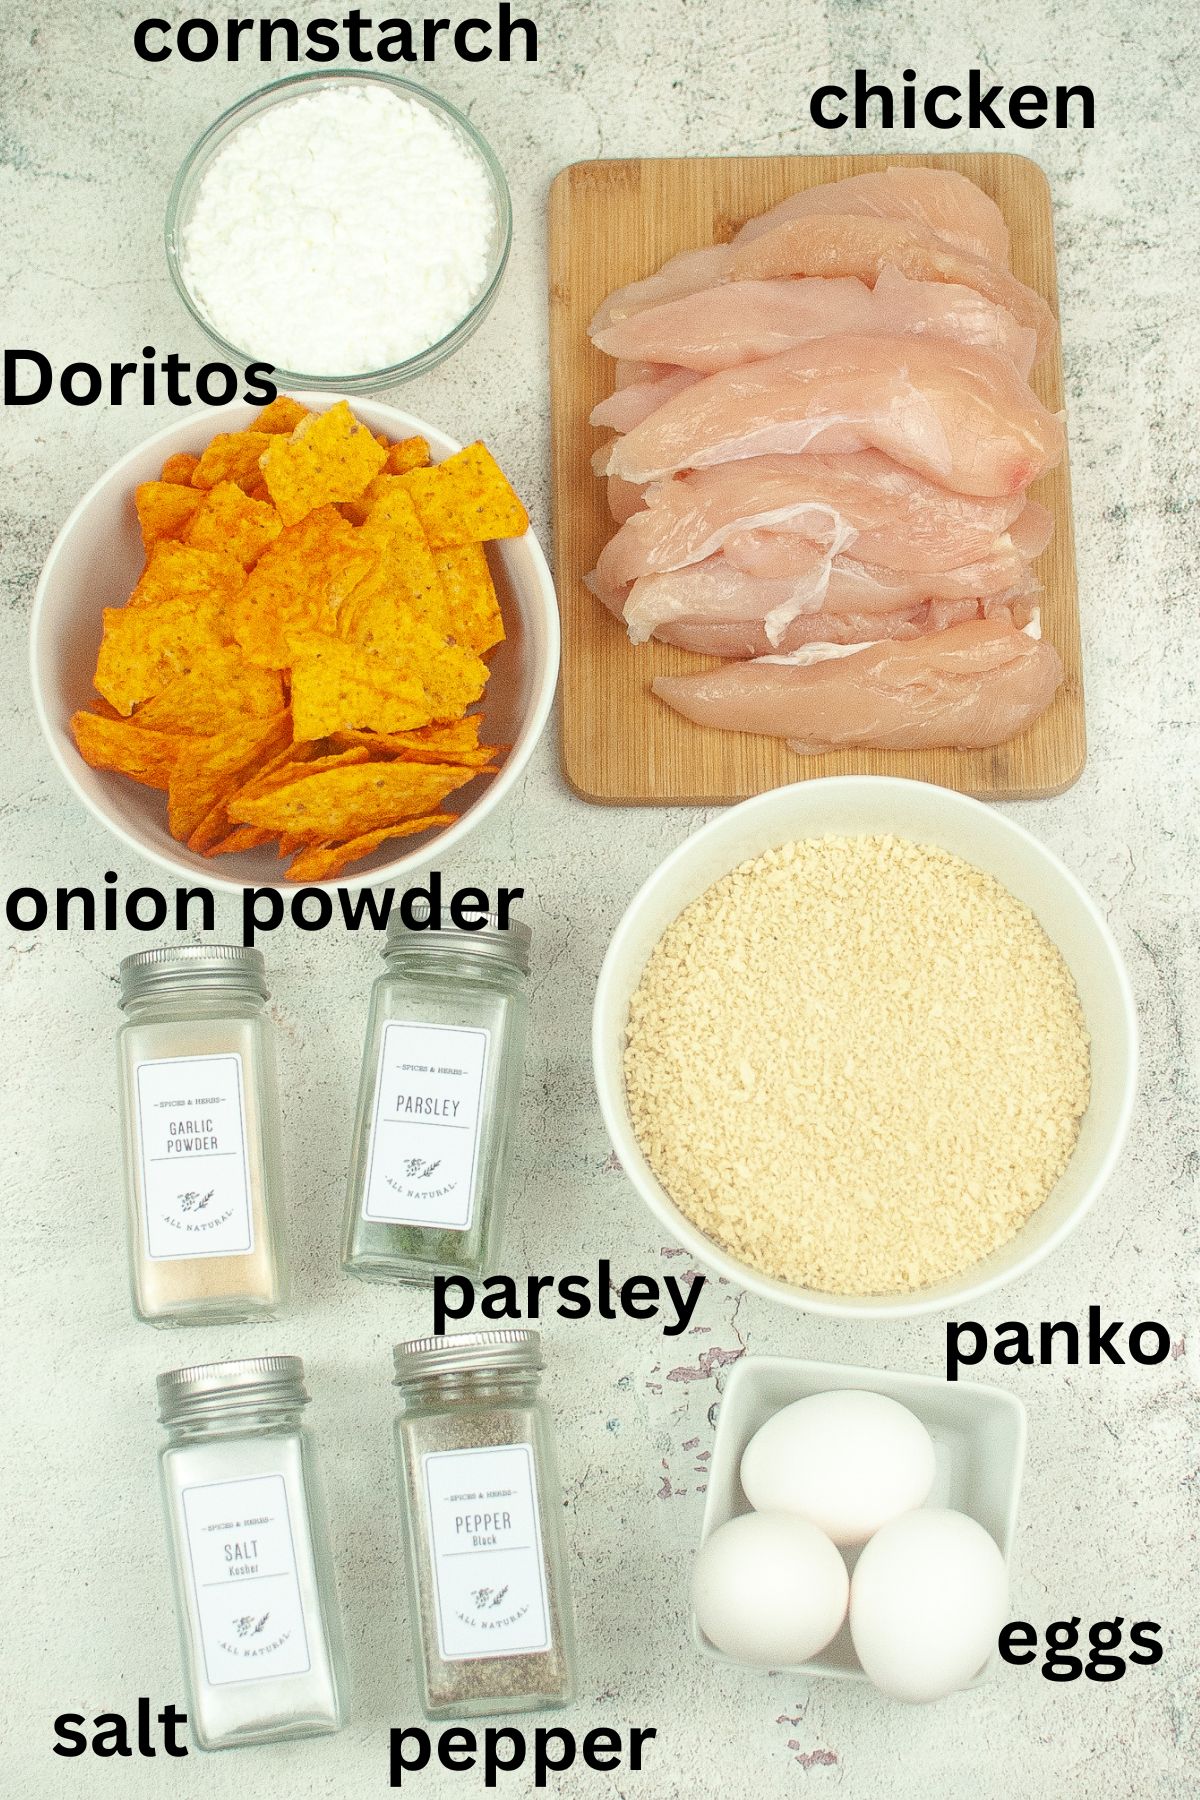 cornstarch, chicken tenders, dortios, onion powder, parsley, panko, eggs, salt, pepper on a textured background